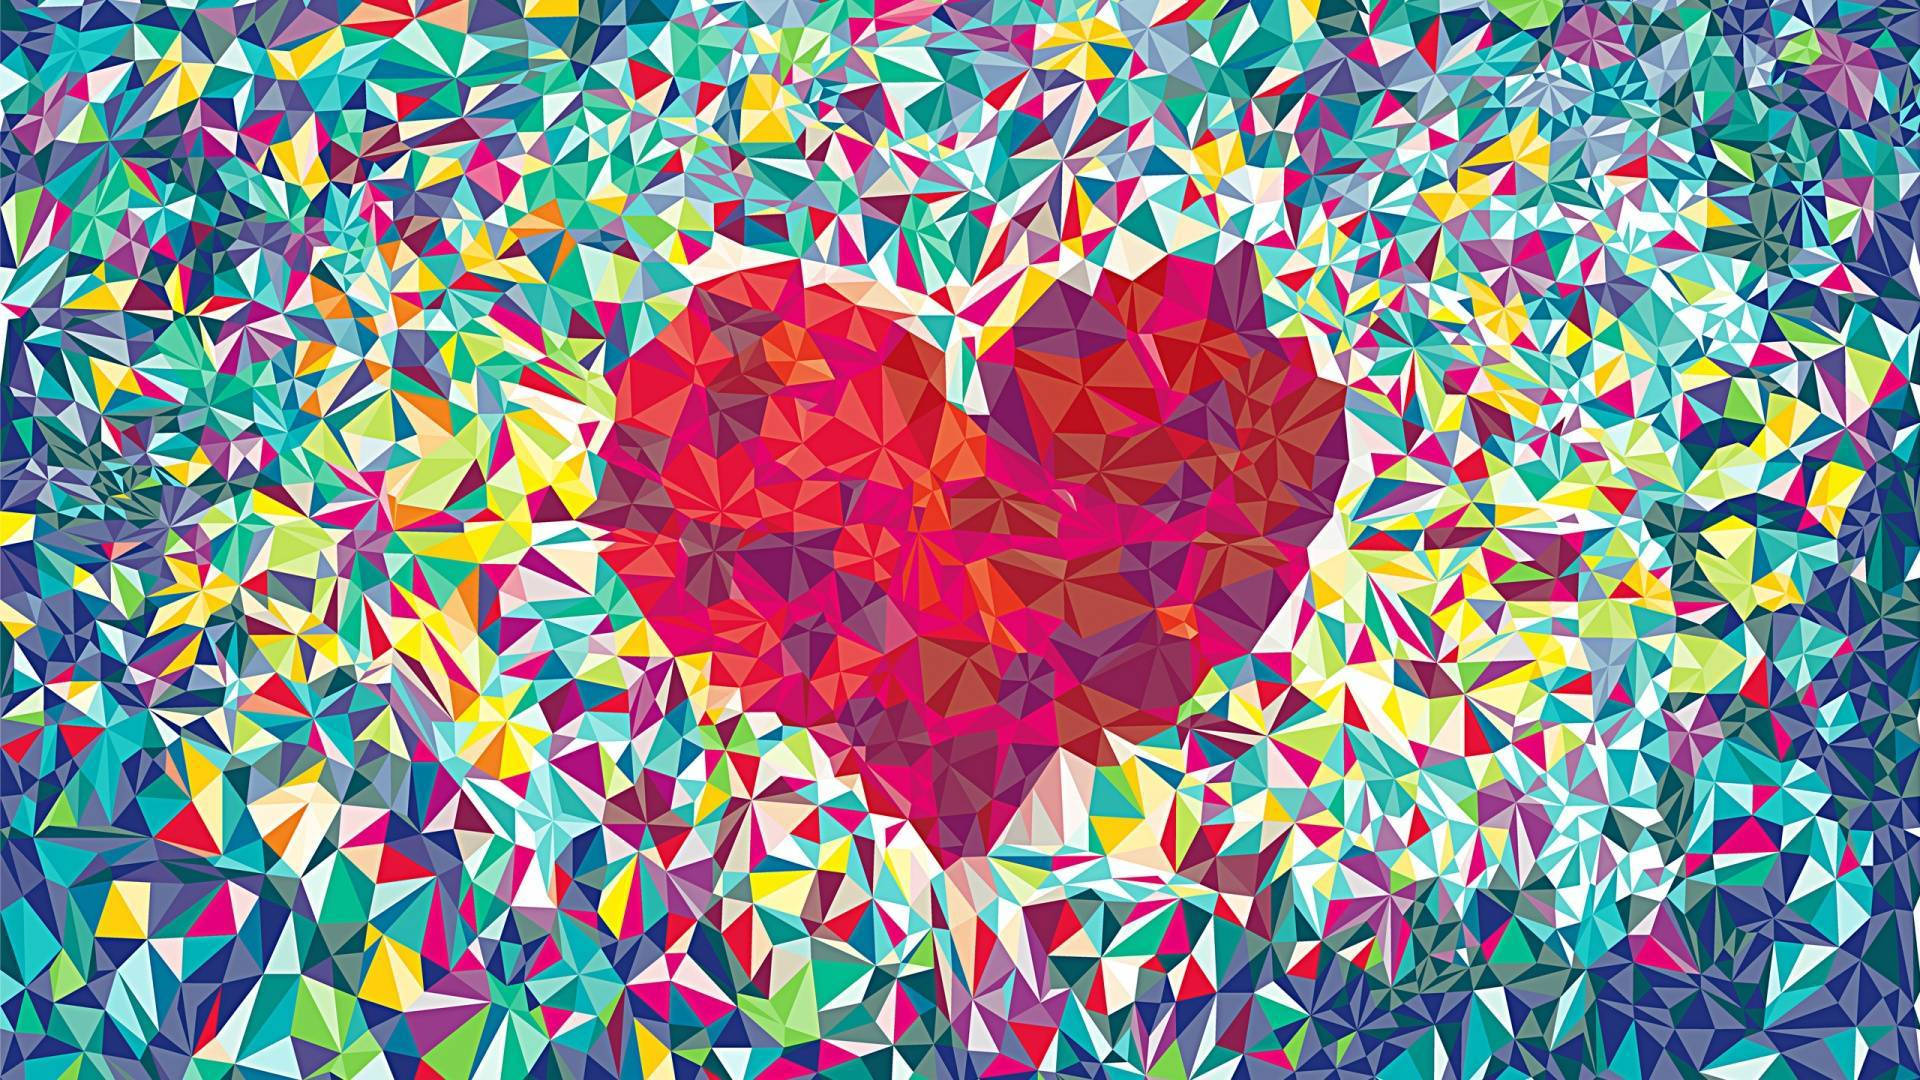 Kpop Mosaic Heart Art Wallpaper